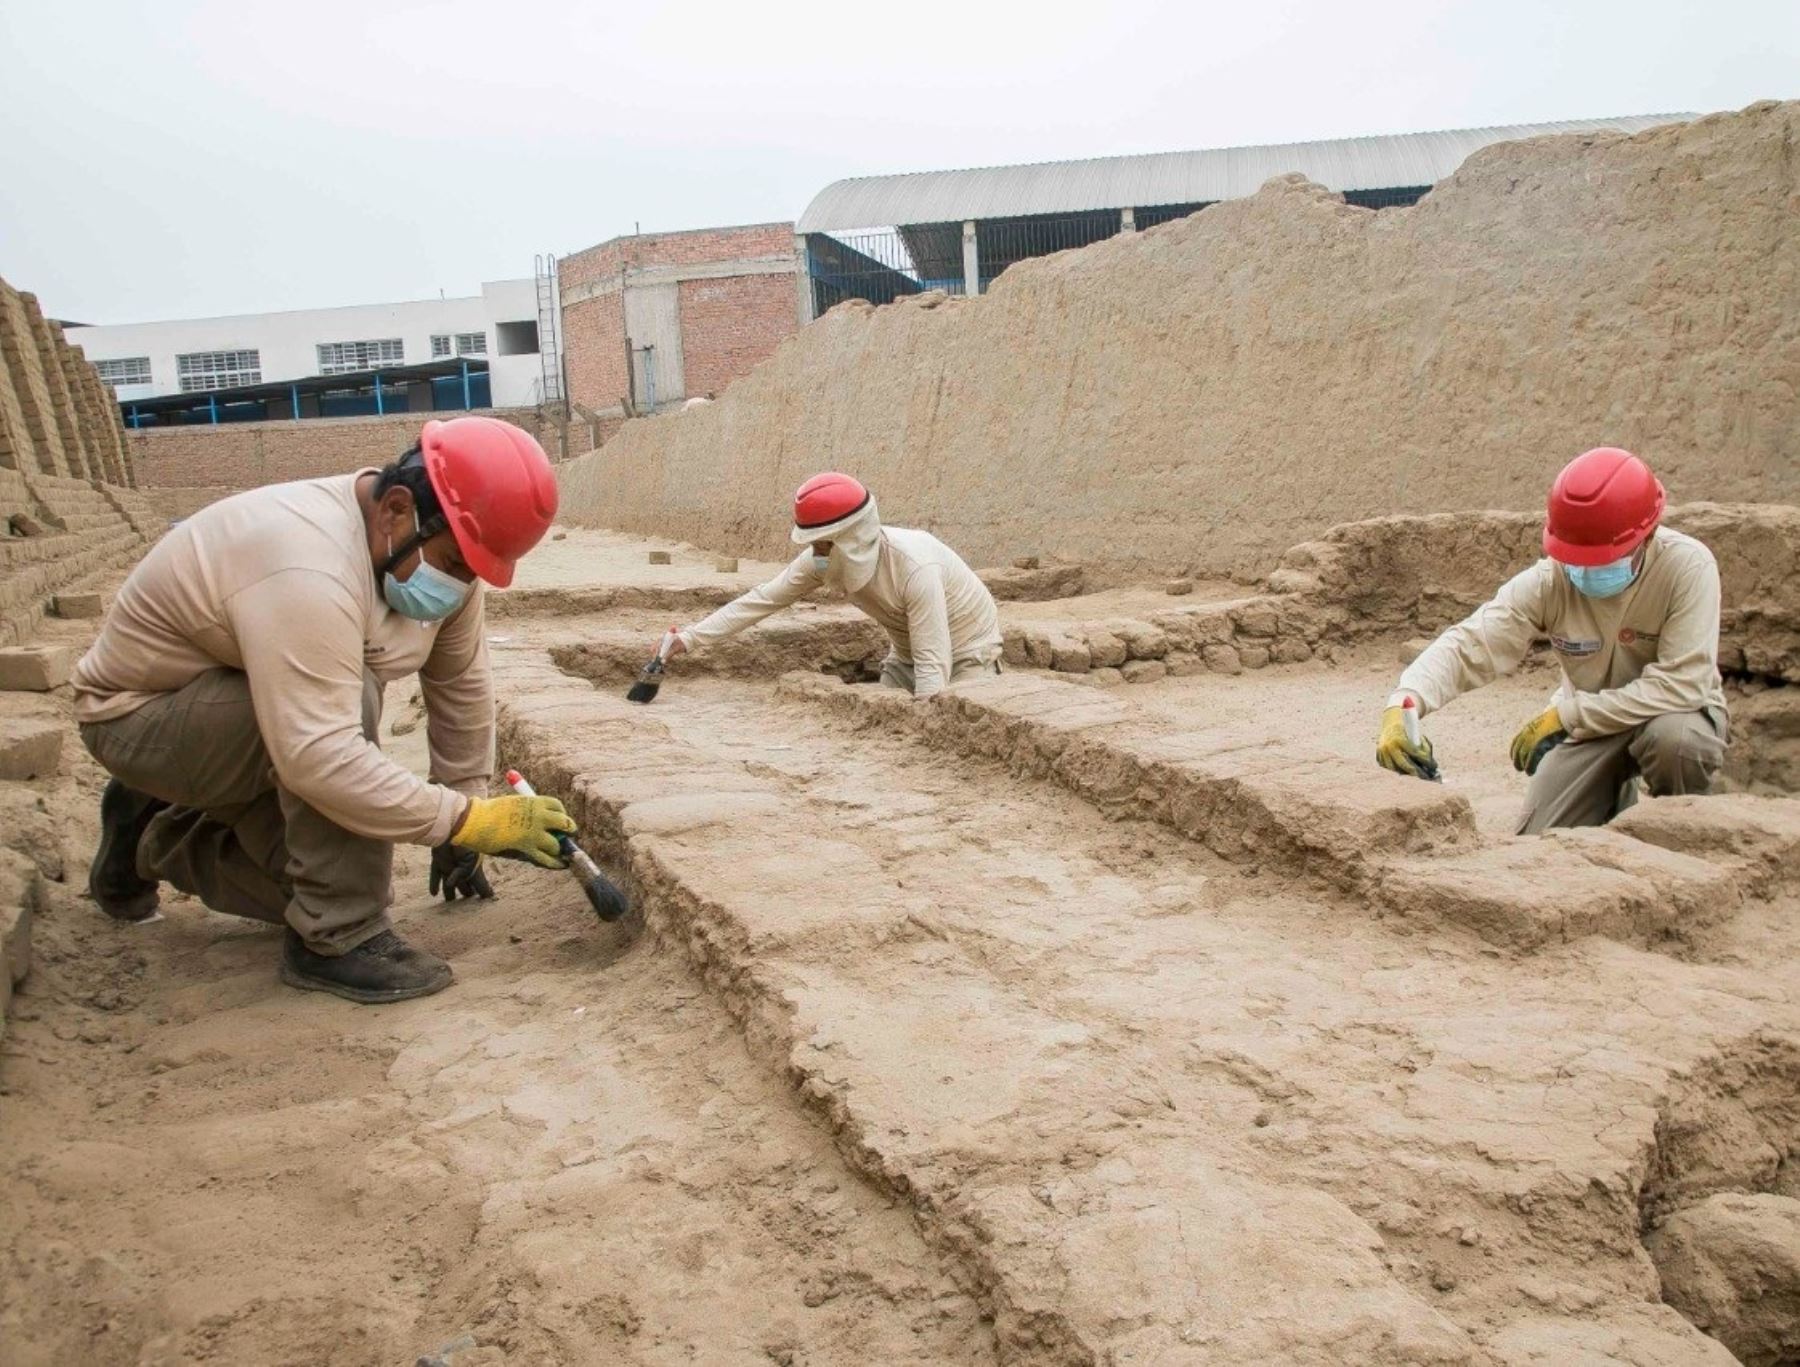 Investigadores del Proyecto Especial Complejo Arqueológico Chan Chan iniciarán trabajos de investigación, restauración y conservación arqueológica en la huaca Takaynamo. ANDINA/Difusión